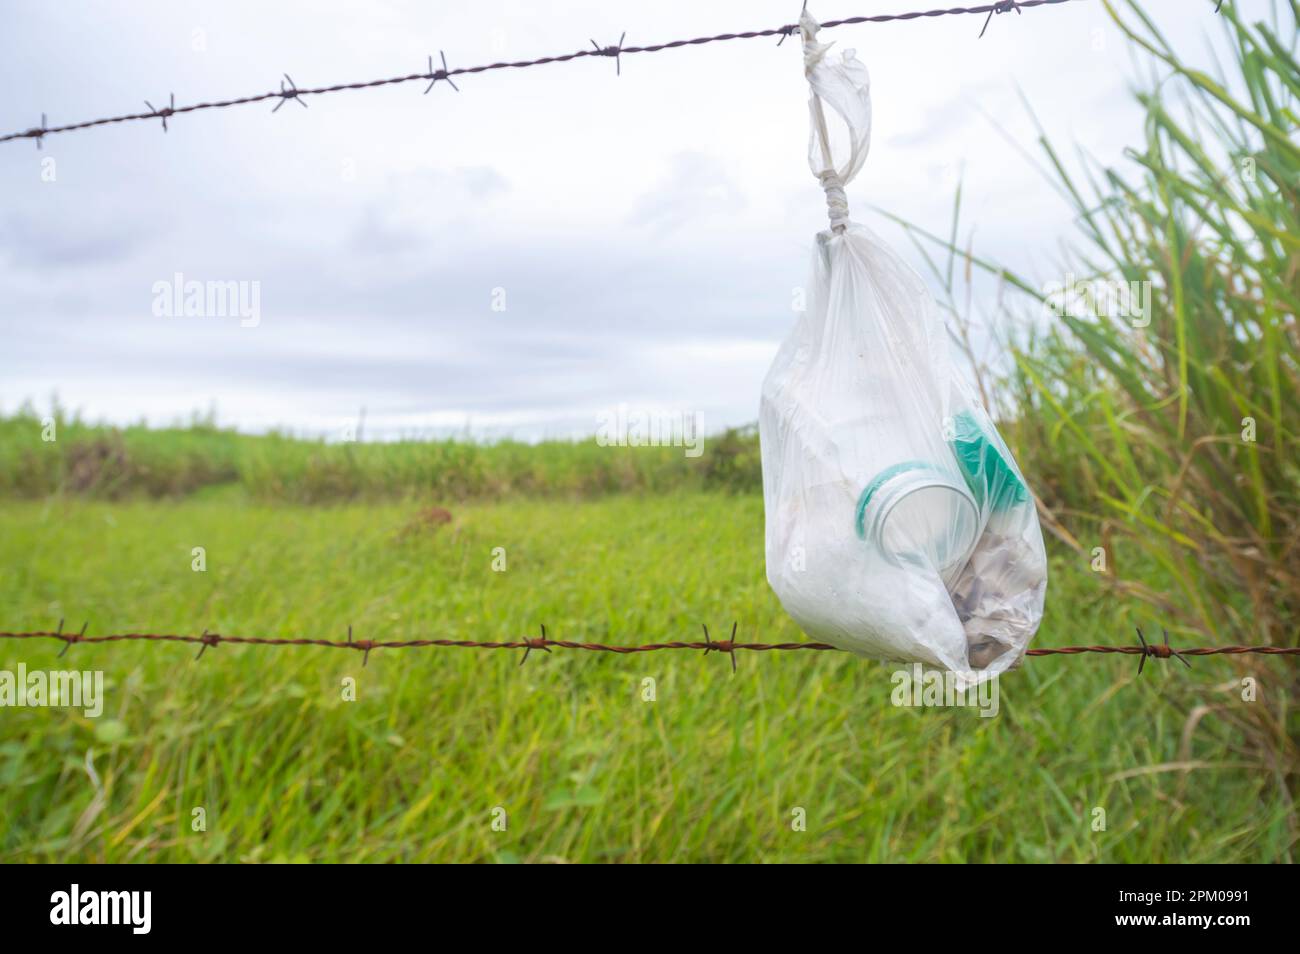 Tüte mit Müll in einen Zaun gebunden mit Vegetation im Hintergrund an einem bewölkten Tag, Konzept der Umweltverschmutzung der Natur. Stockfoto